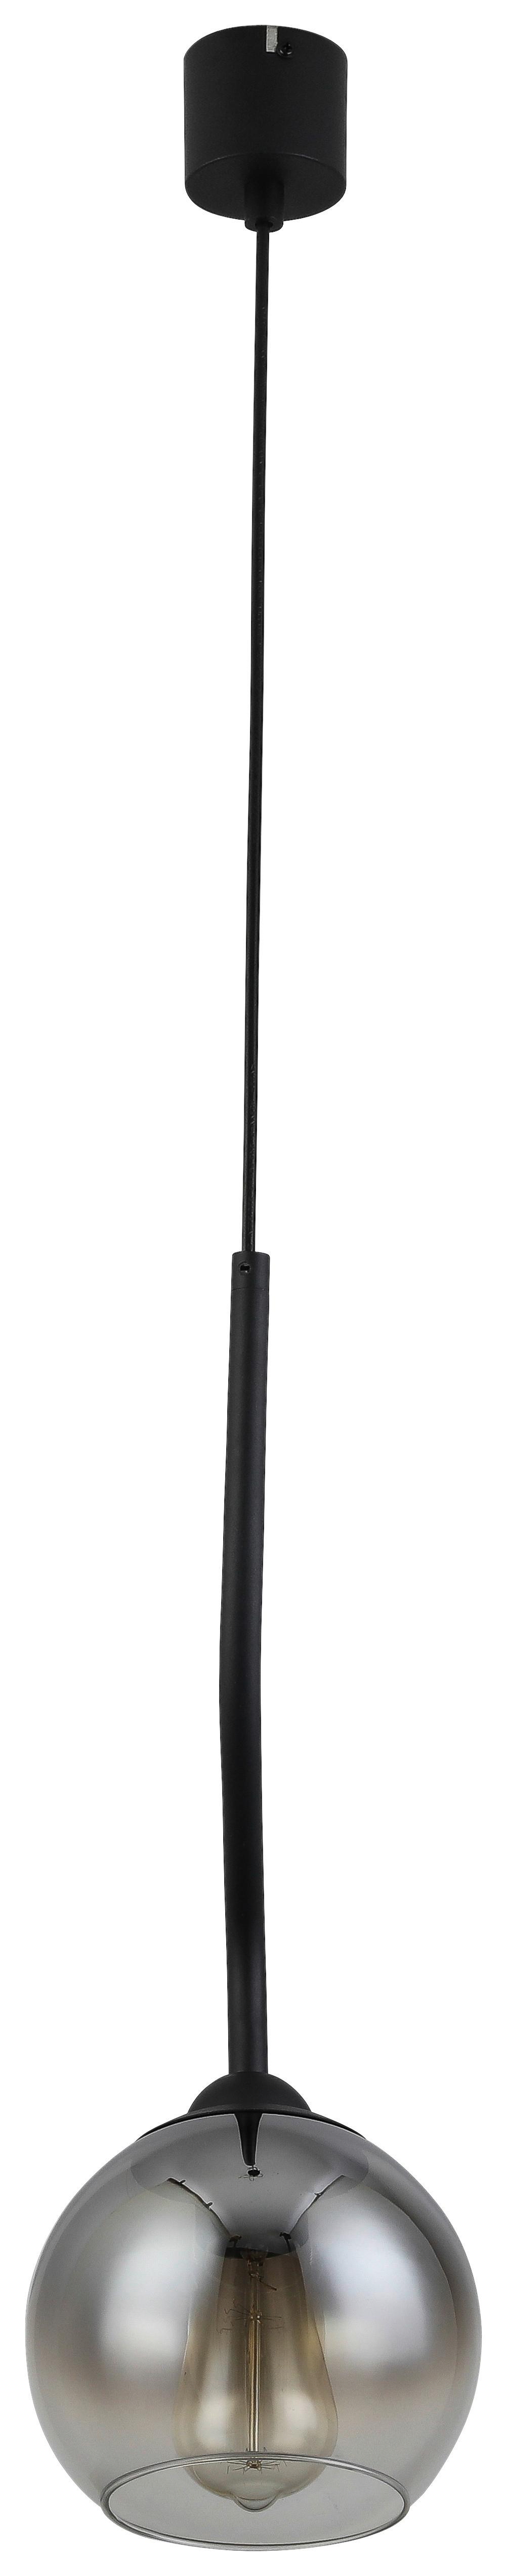 Závěsné Svítidlo Kian, Bez 1x E27 Max. 25w - černá, Moderní, kov/plast (18/120cm) - Visiona